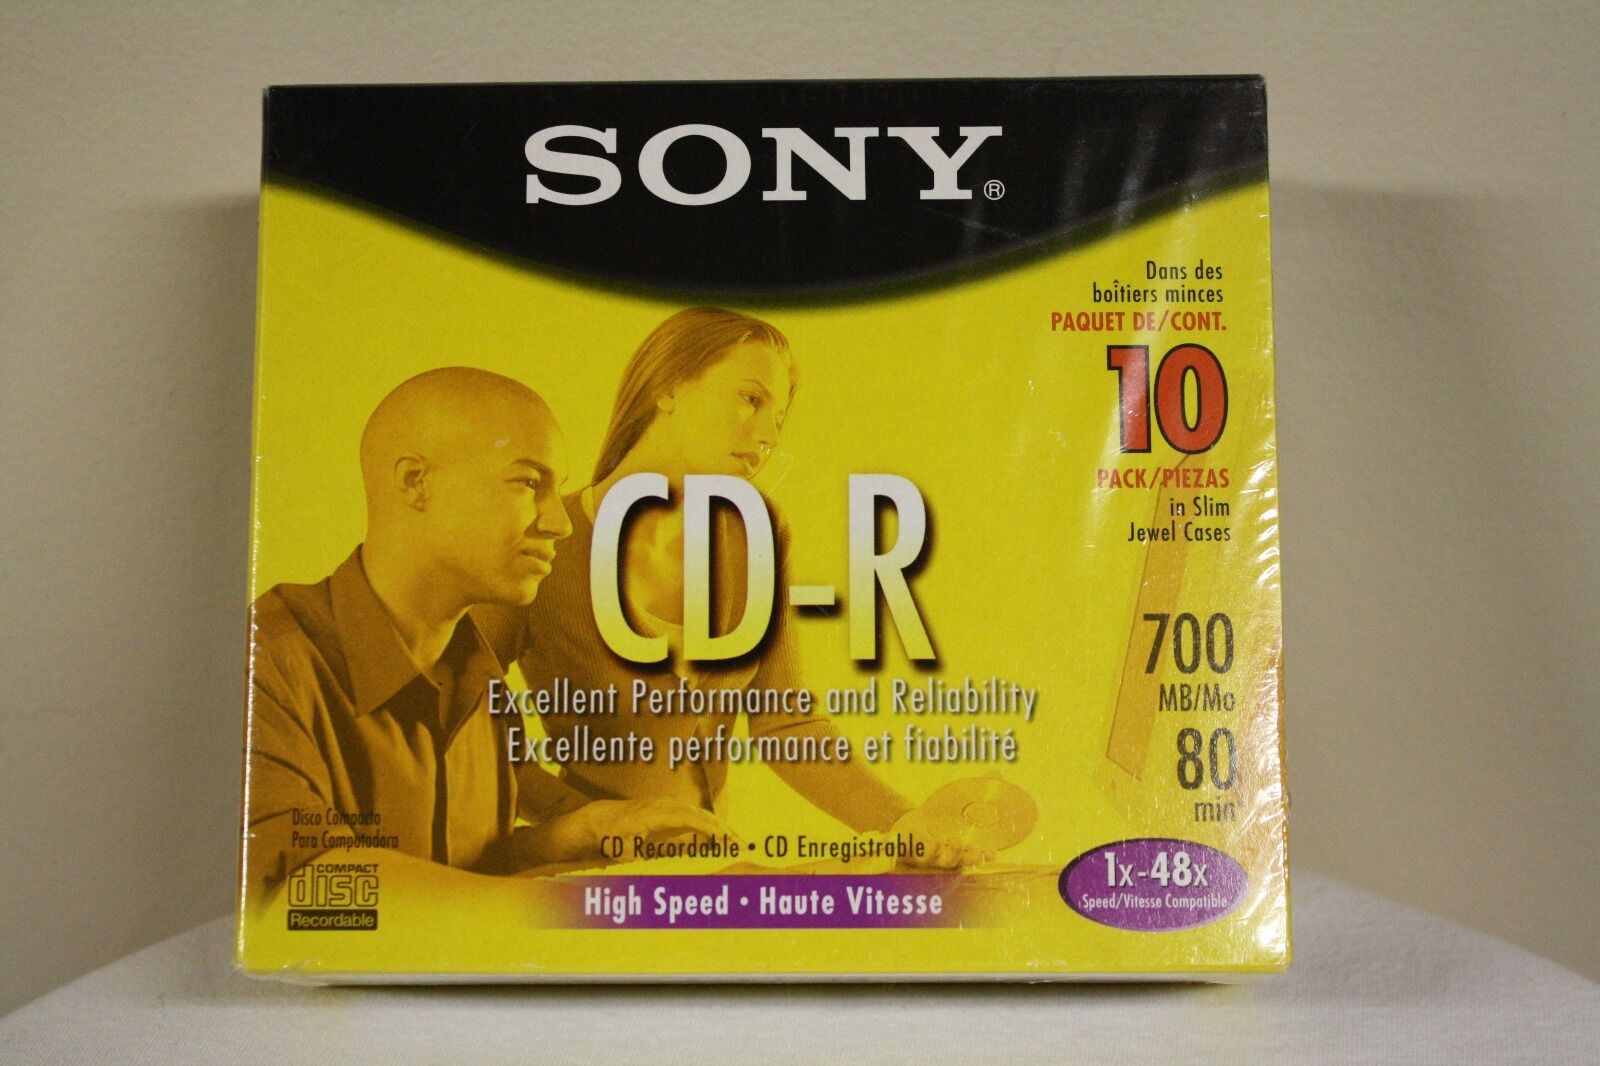 Sony Cd-r 10cd80l3 700mb/mo 1x-48x Cd-r 10/pack 80min New